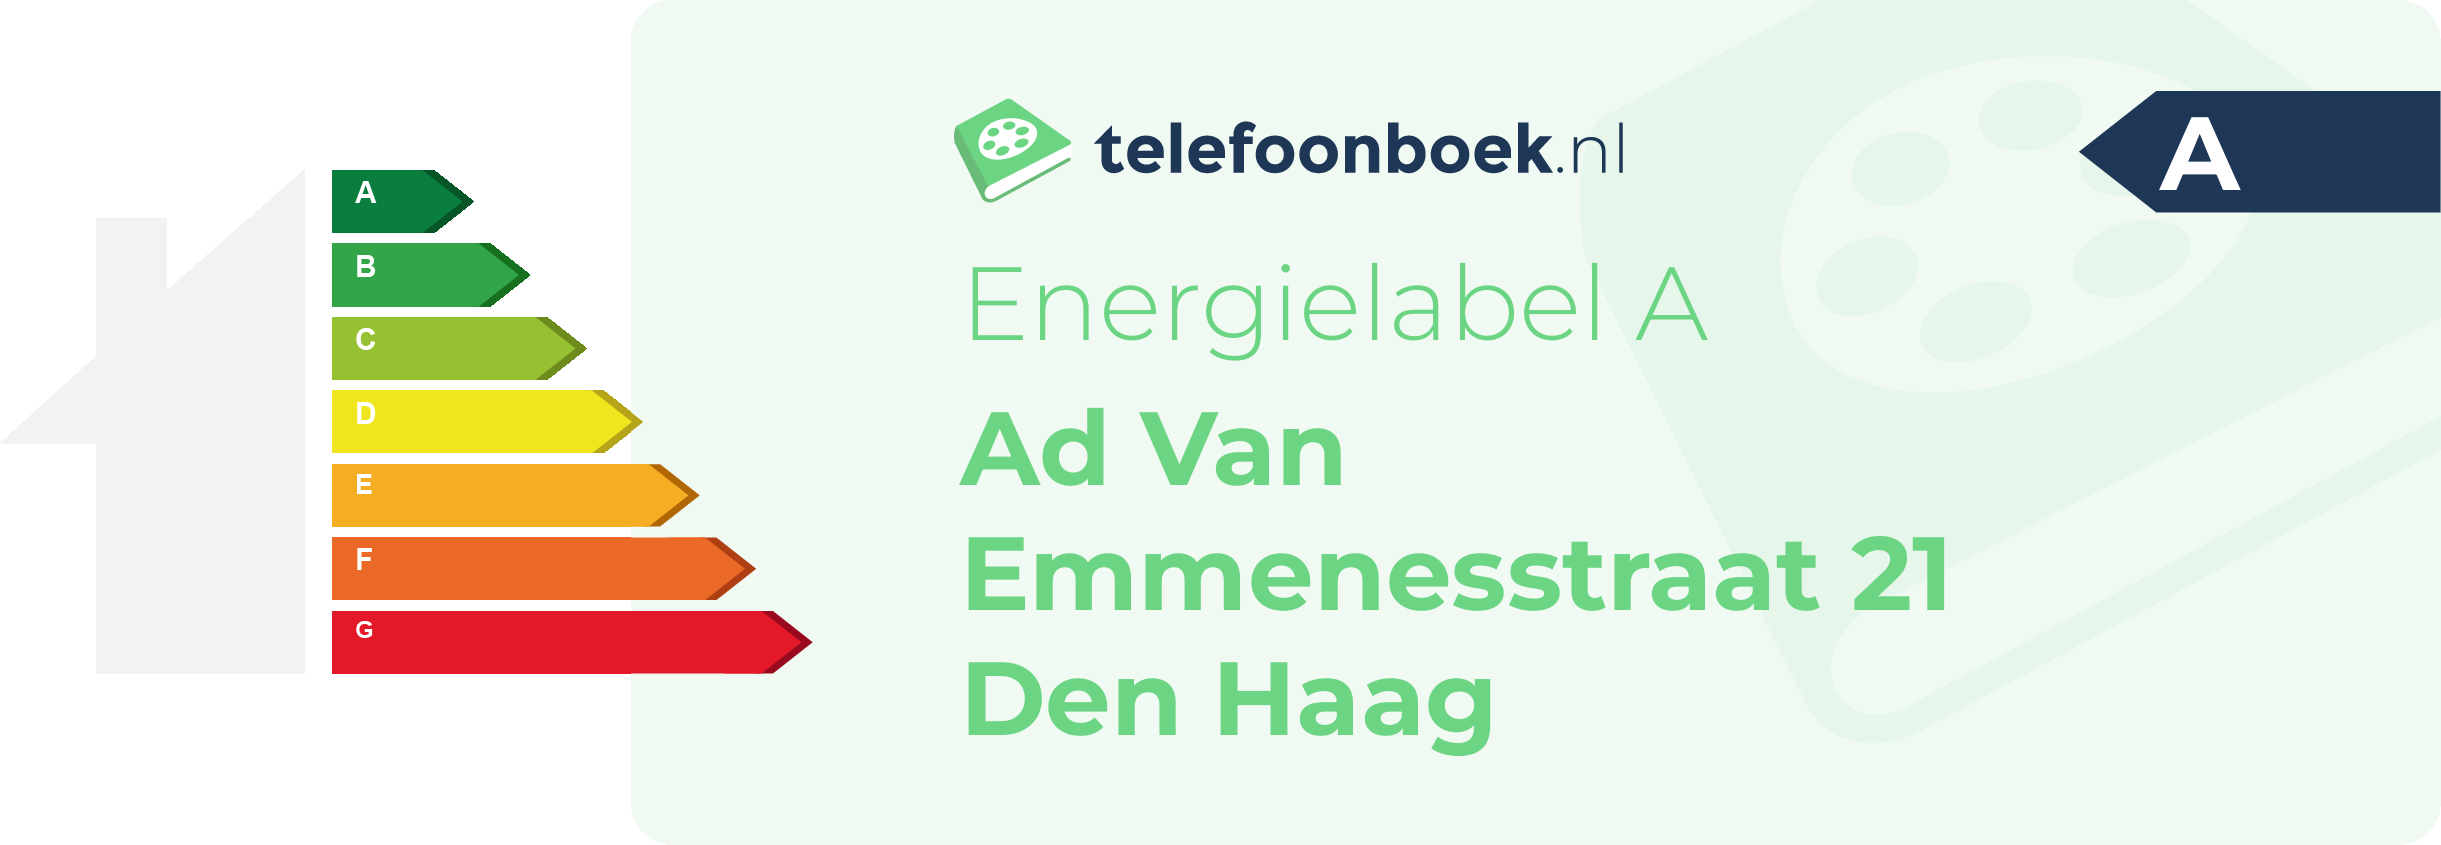 Energielabel Ad Van Emmenesstraat 21 Den Haag